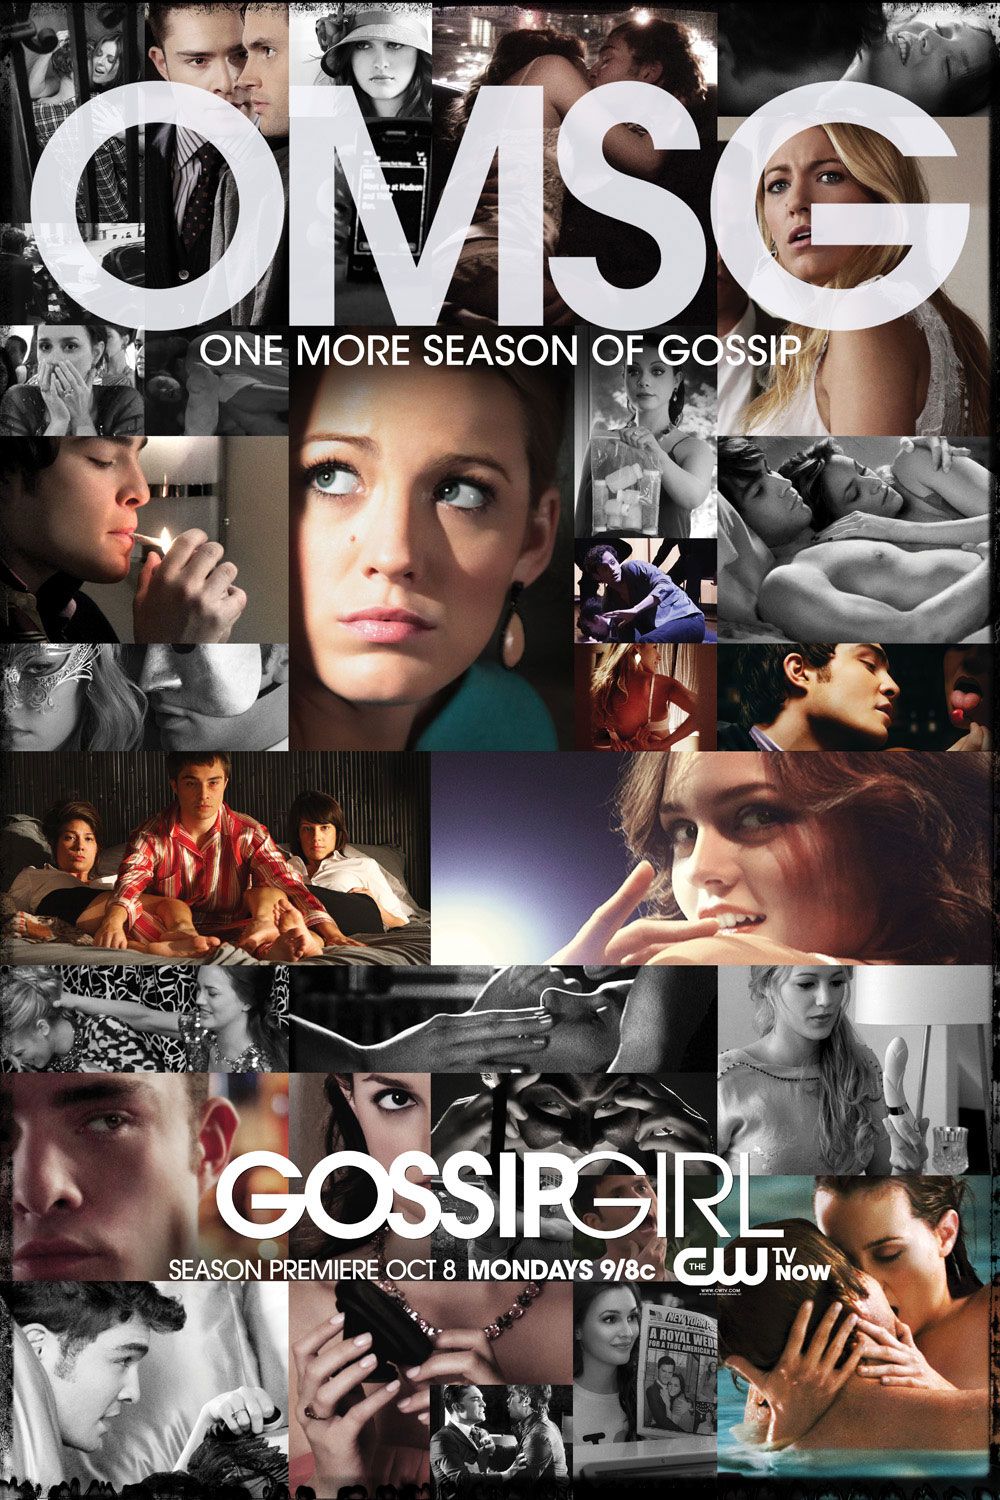 Gossip Girl Season 1 Premiere